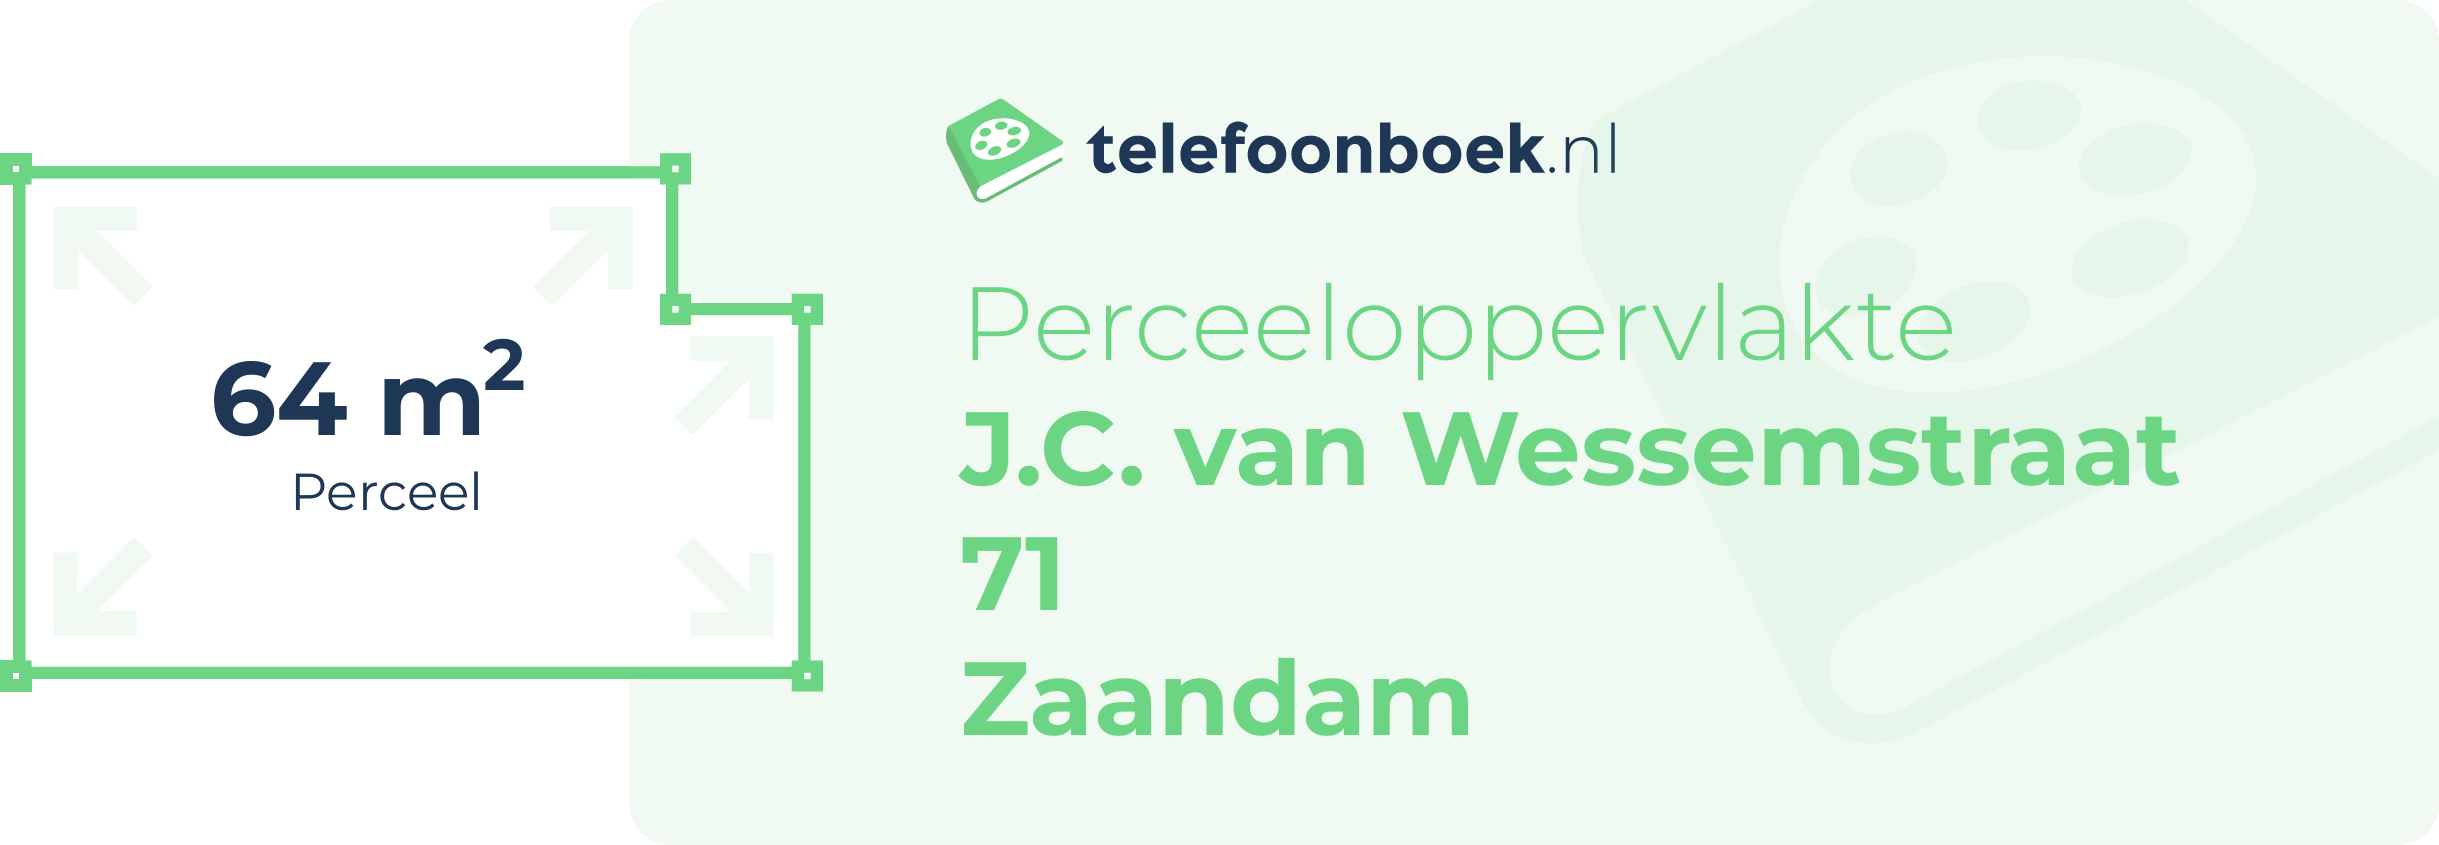 Perceeloppervlakte J.C. Van Wessemstraat 71 Zaandam